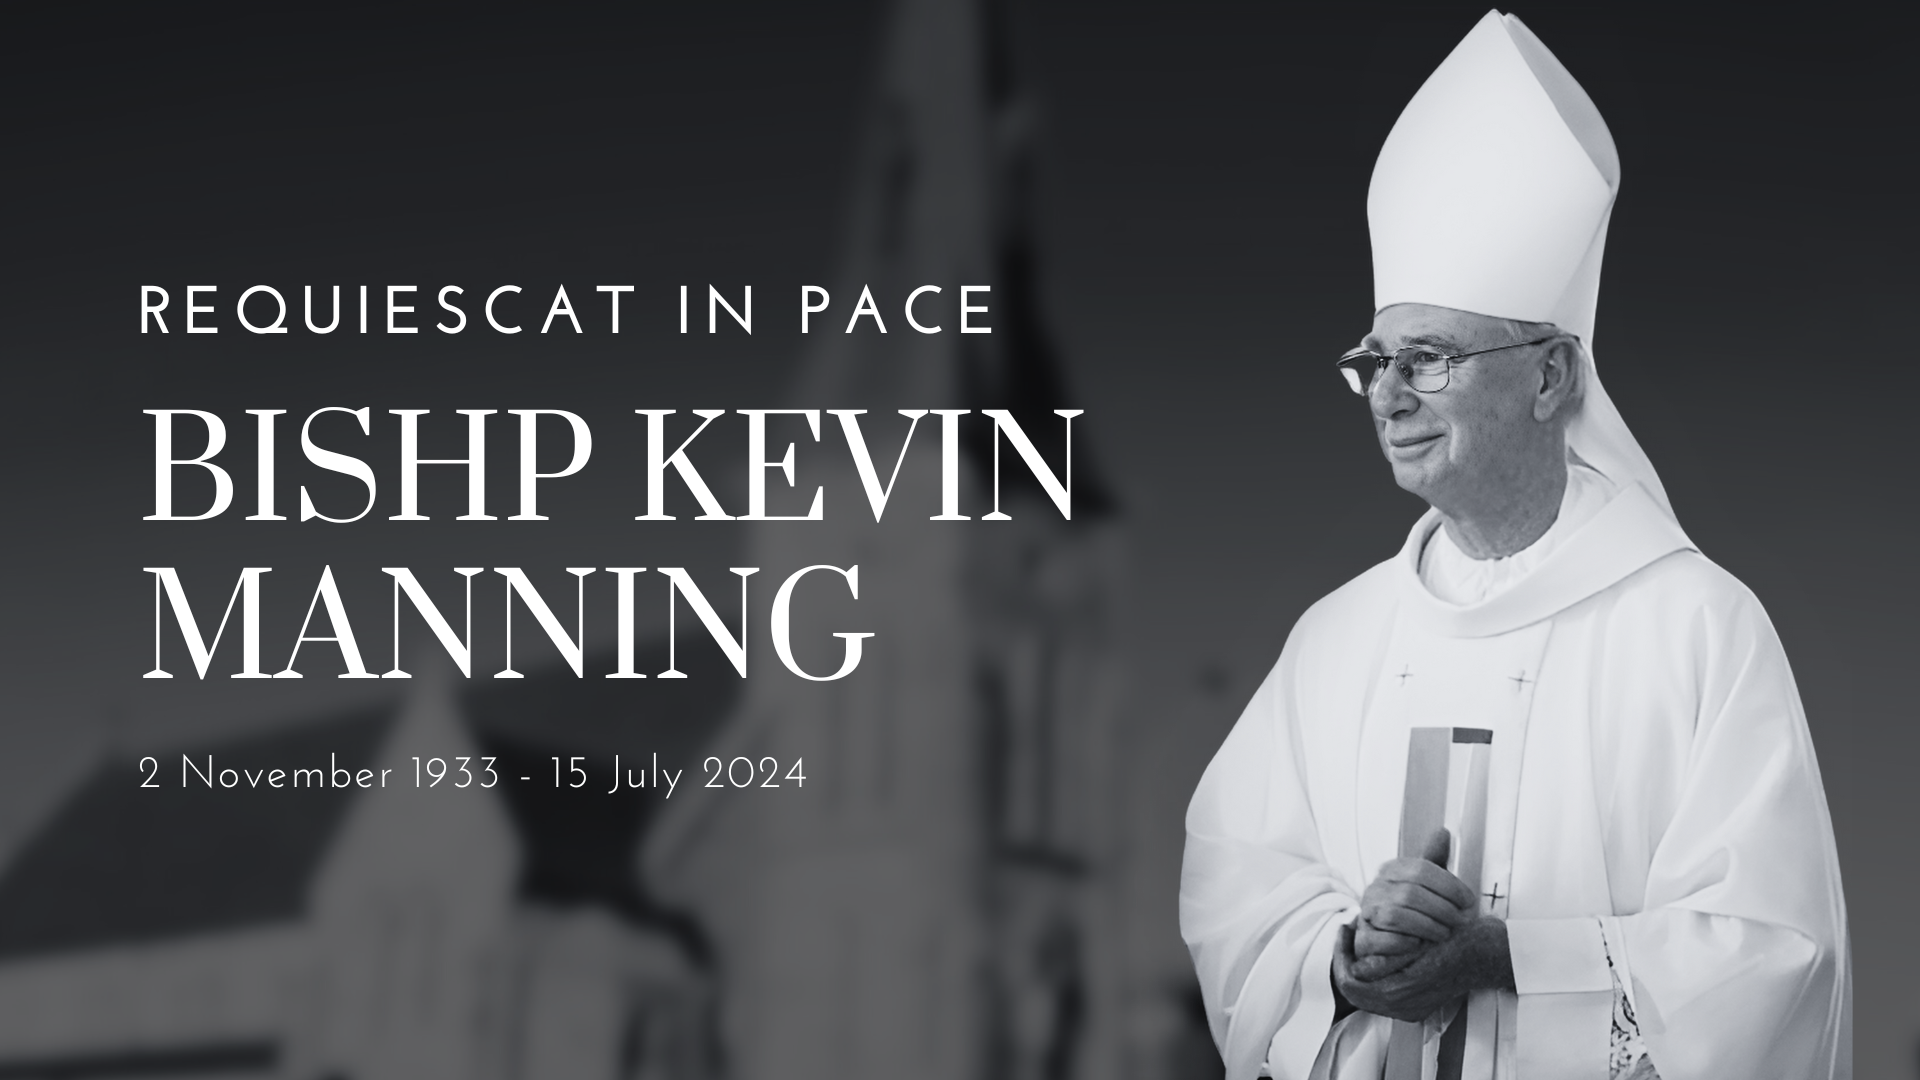 Bishop Kevin Mannning passes away at 90